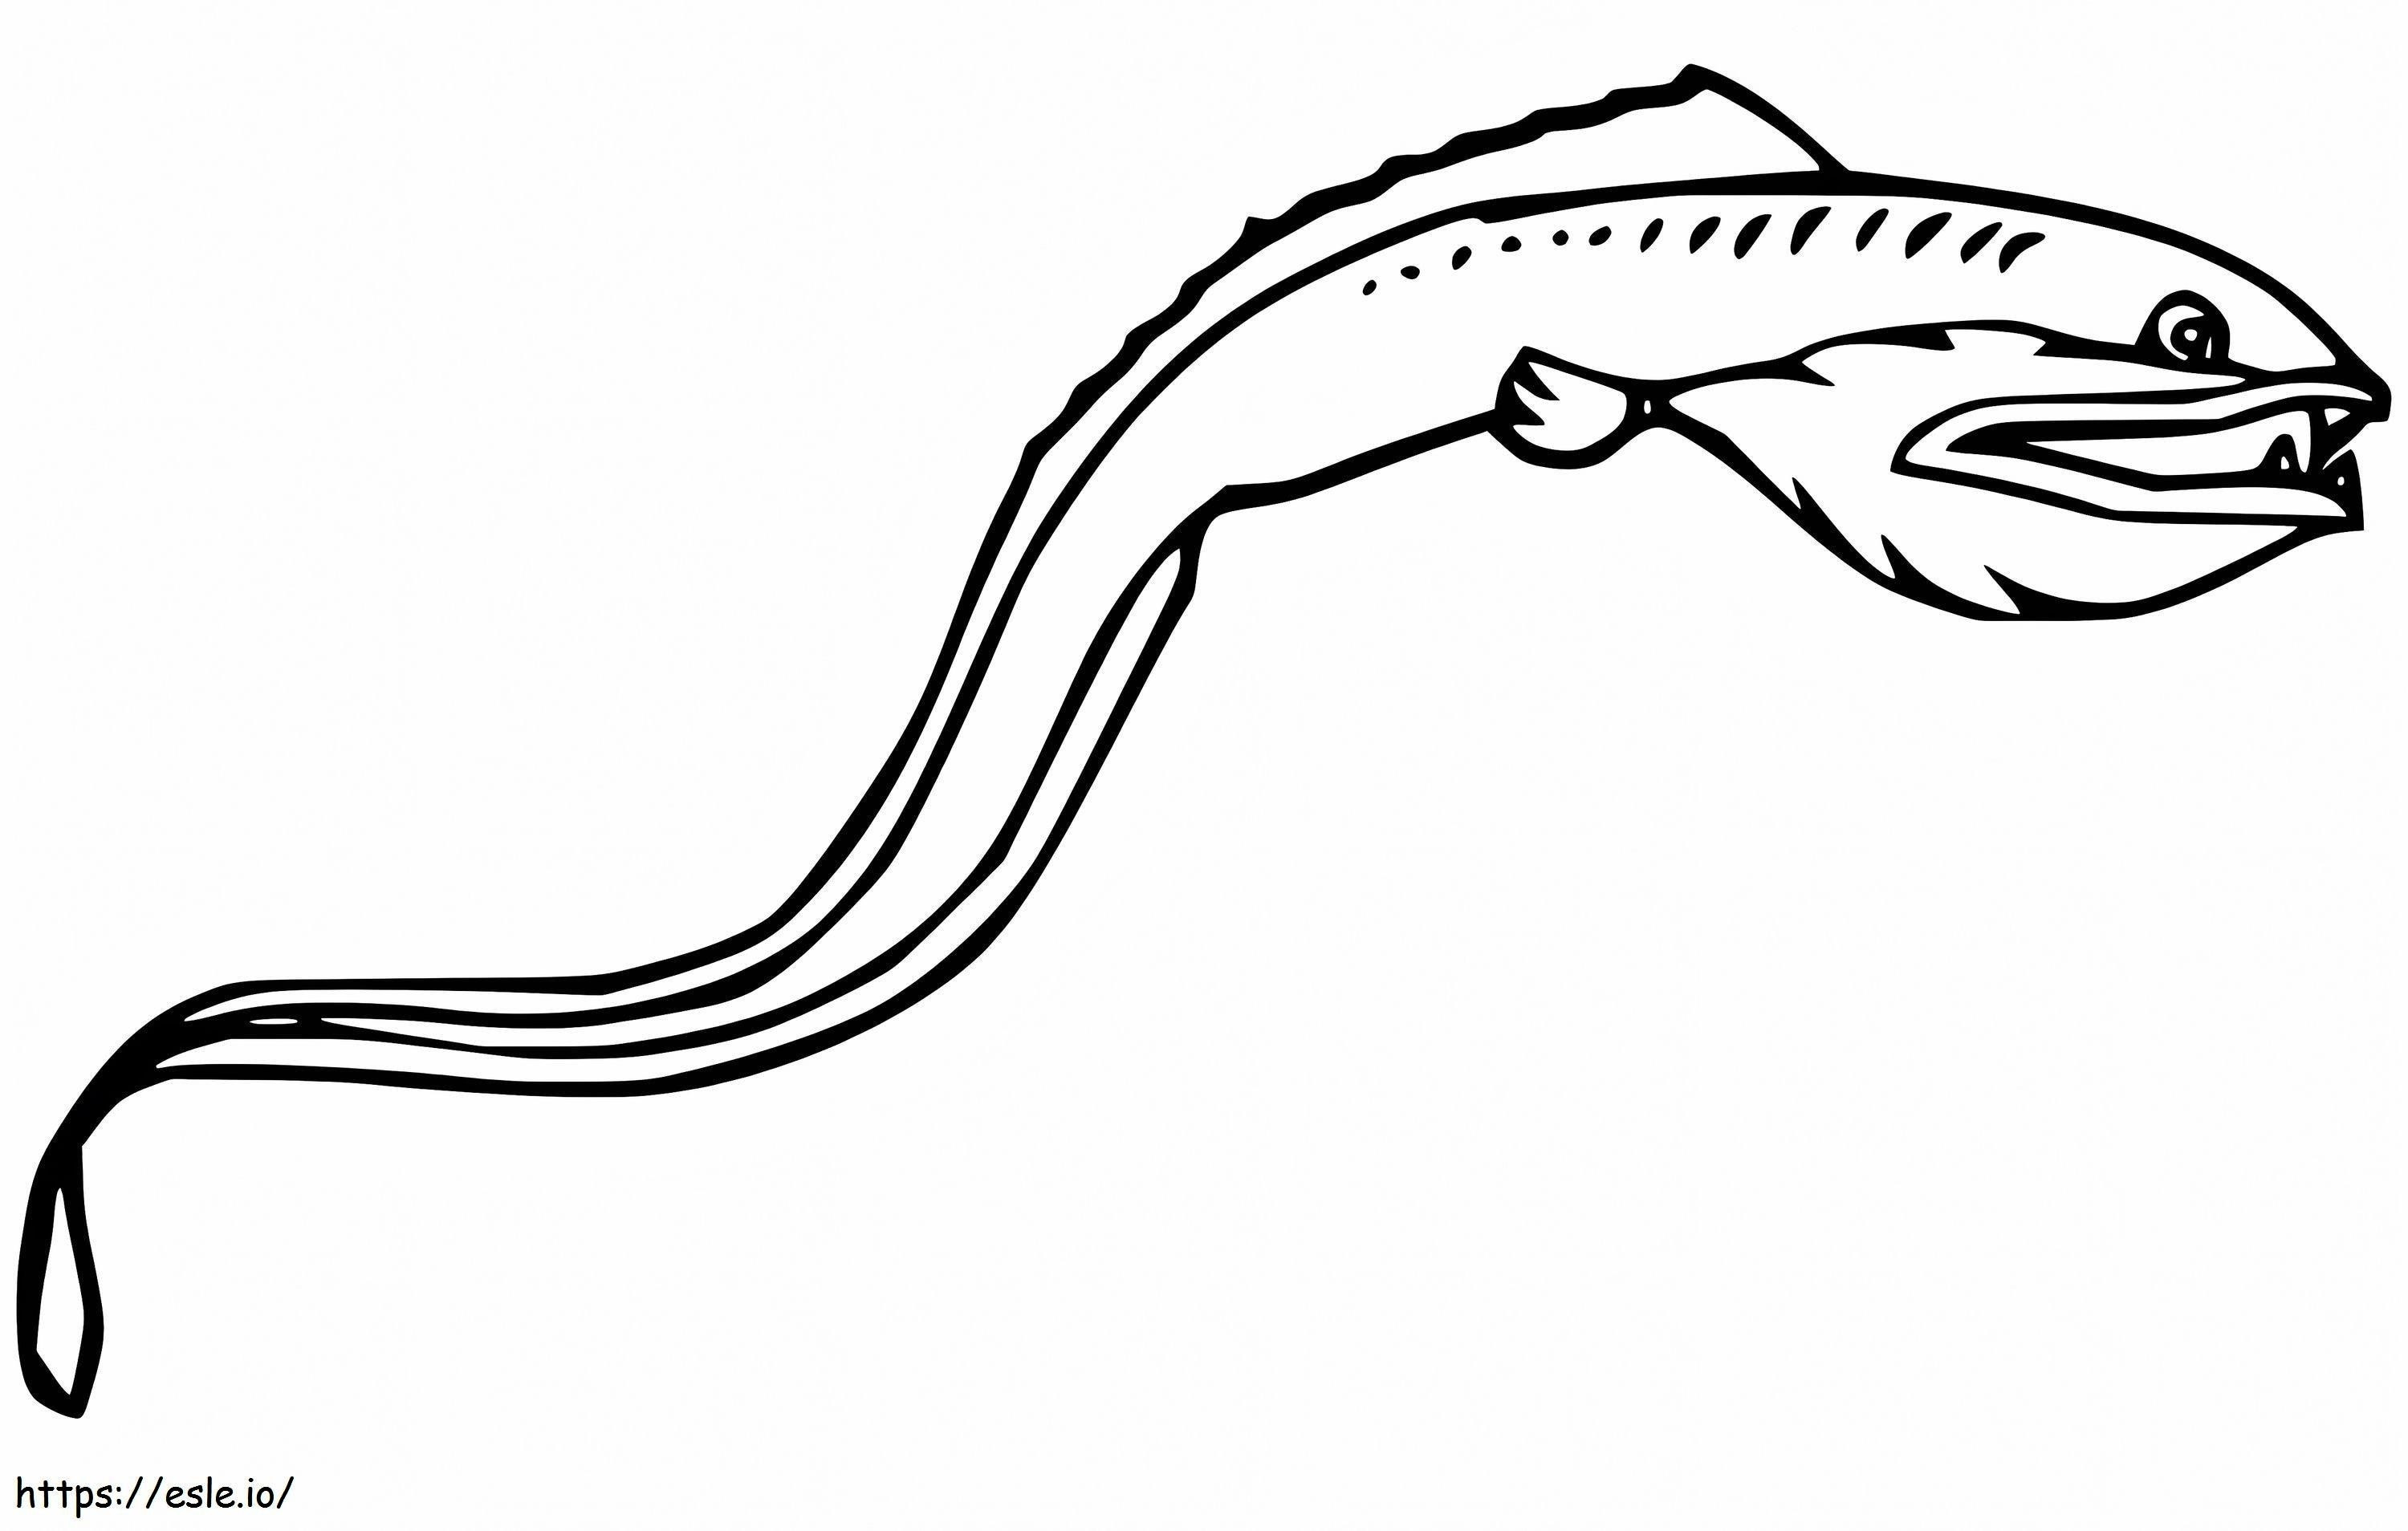 Coloriage Poisson vipère nageant à imprimer dessin